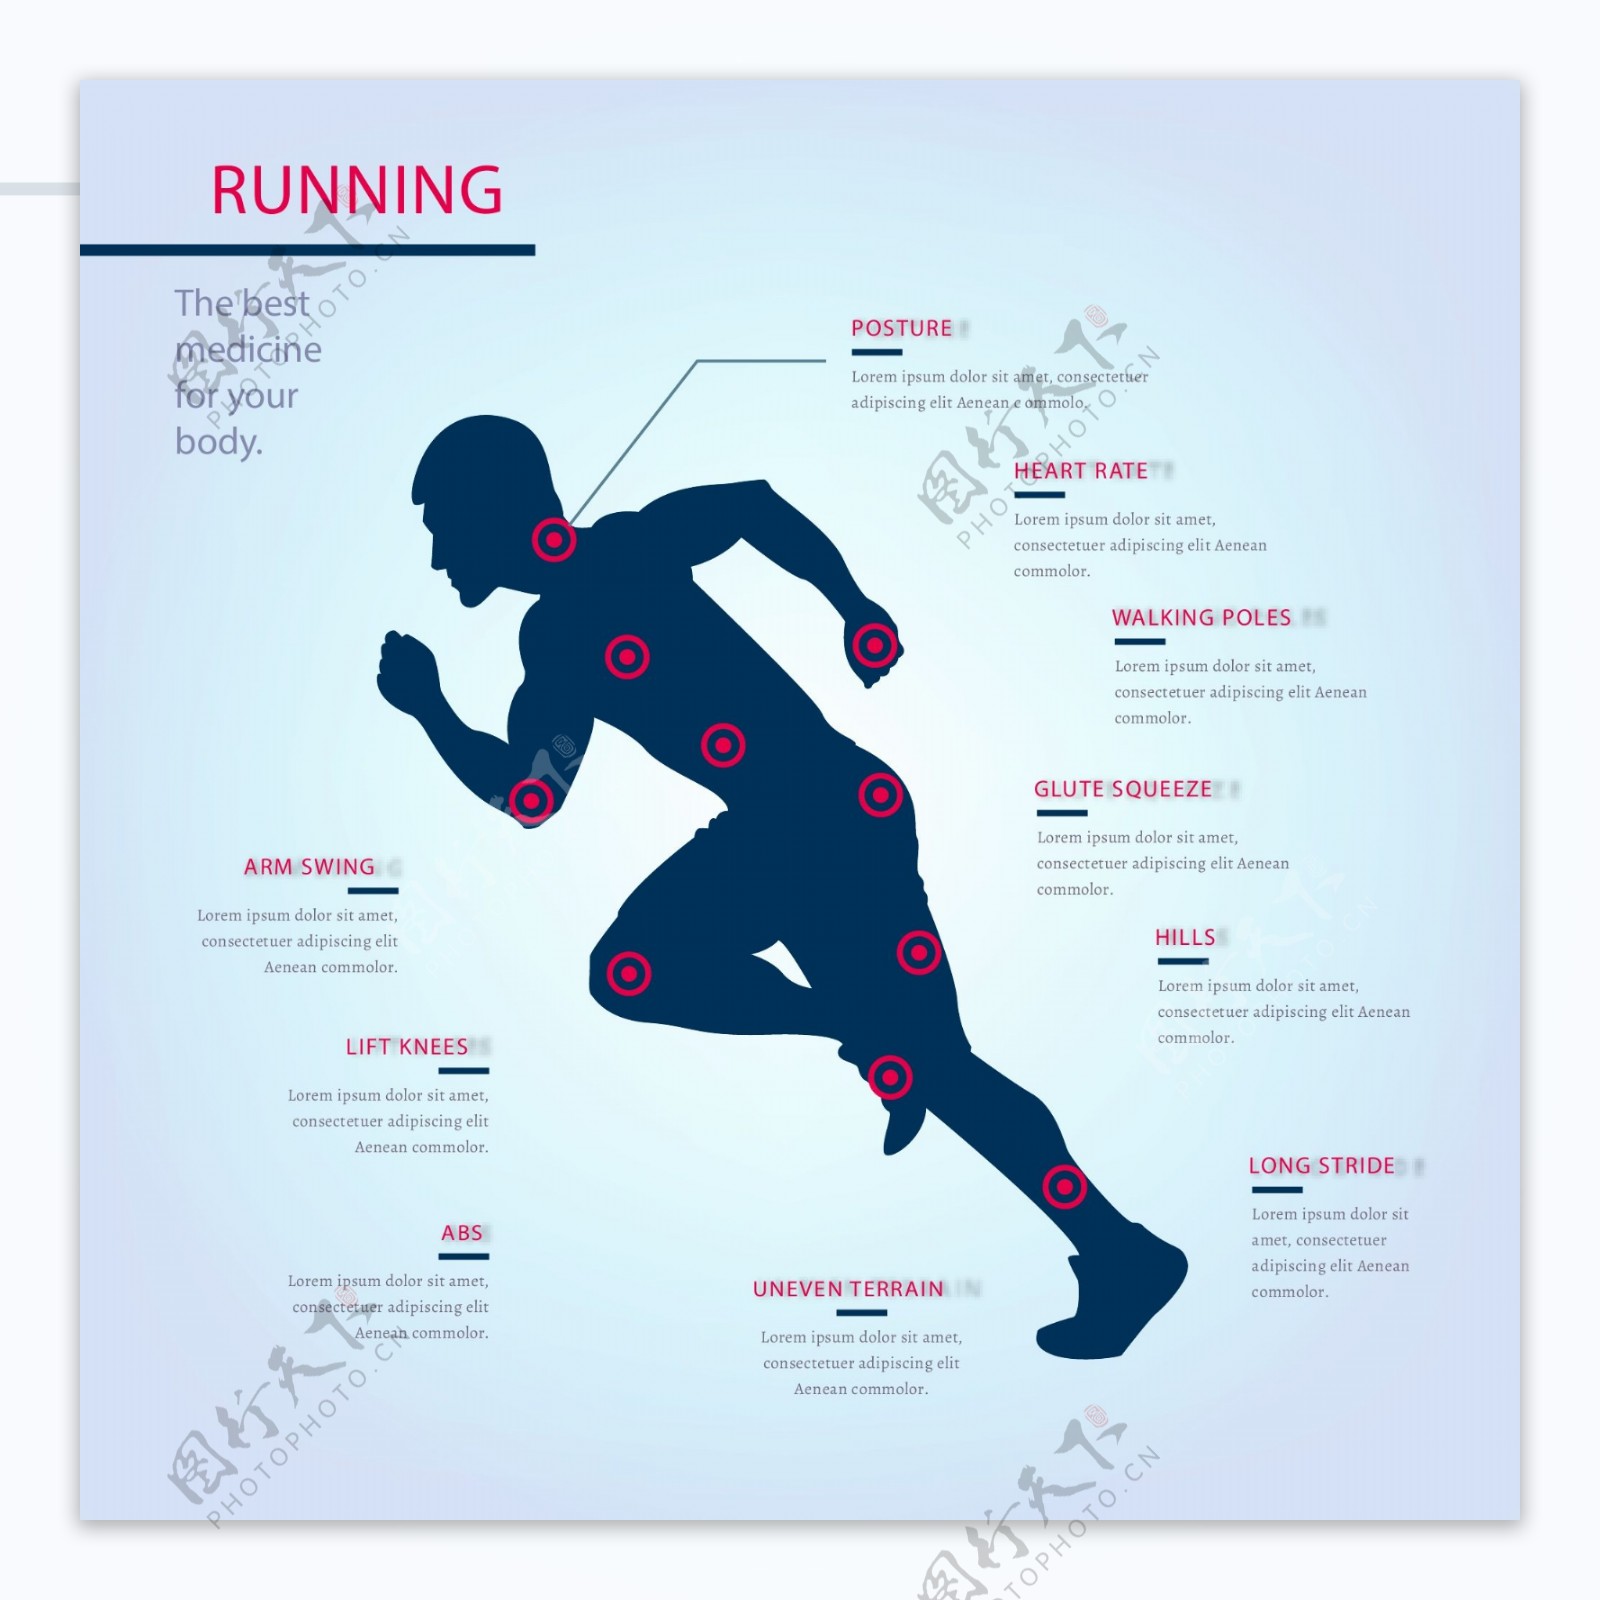 男性剪影轮廓跑步运动信息